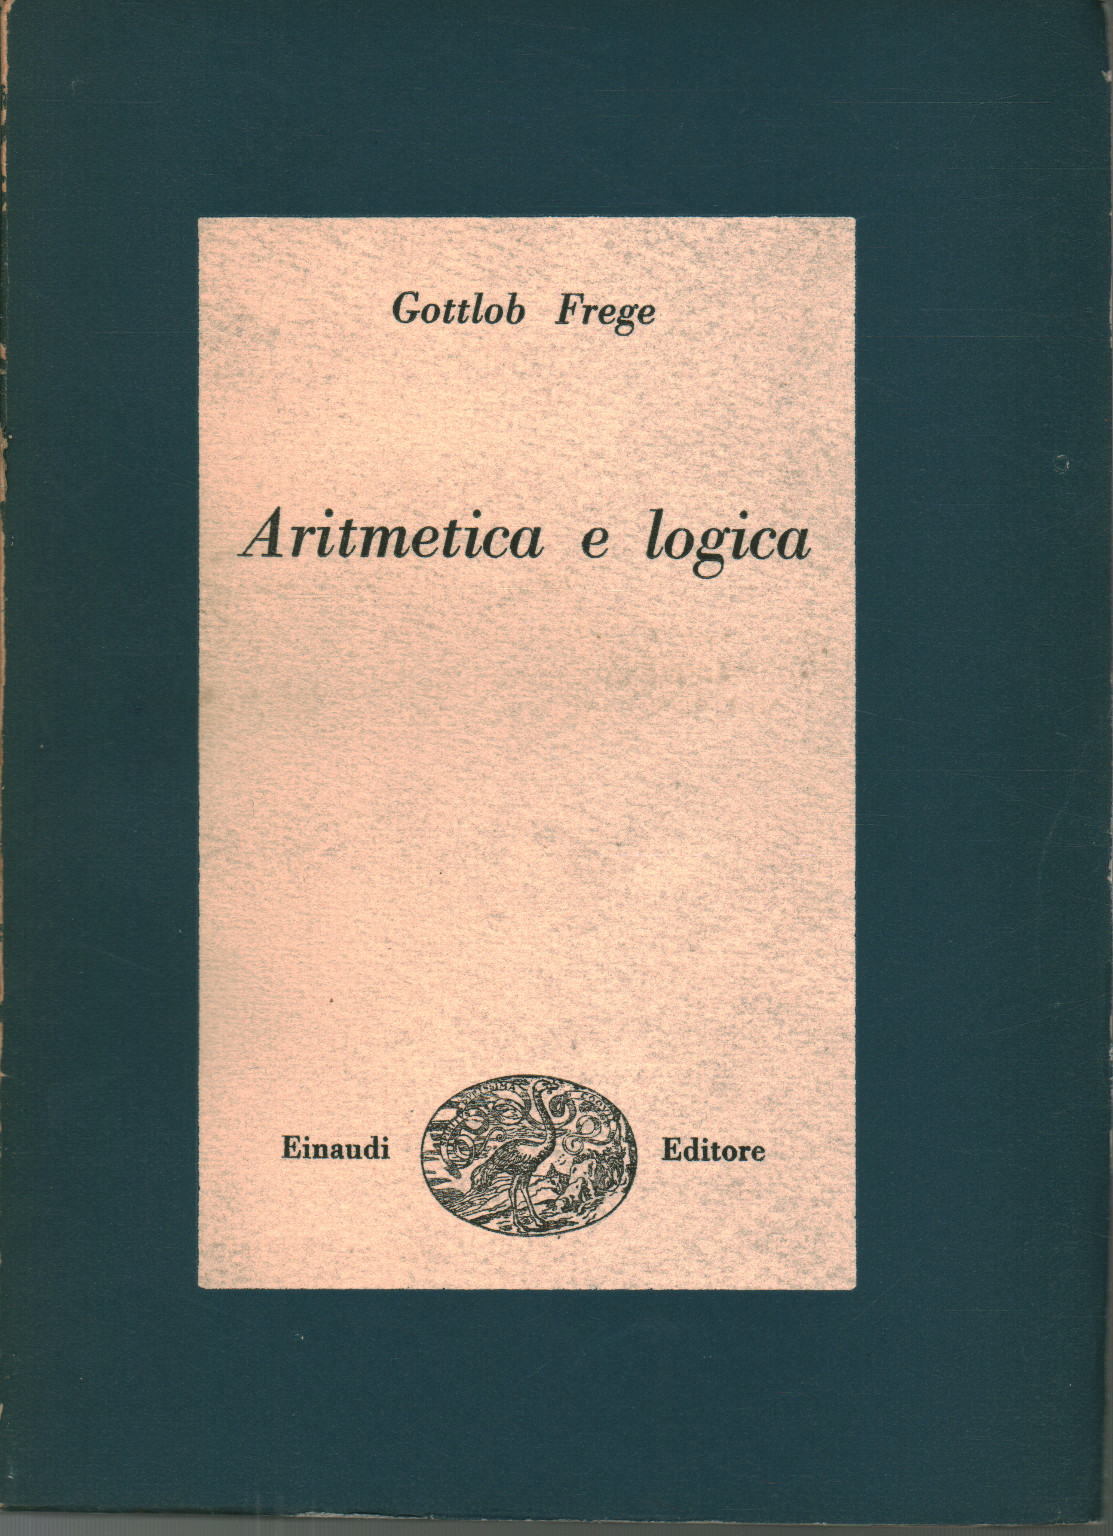 Aritmetica e logica, s.a.